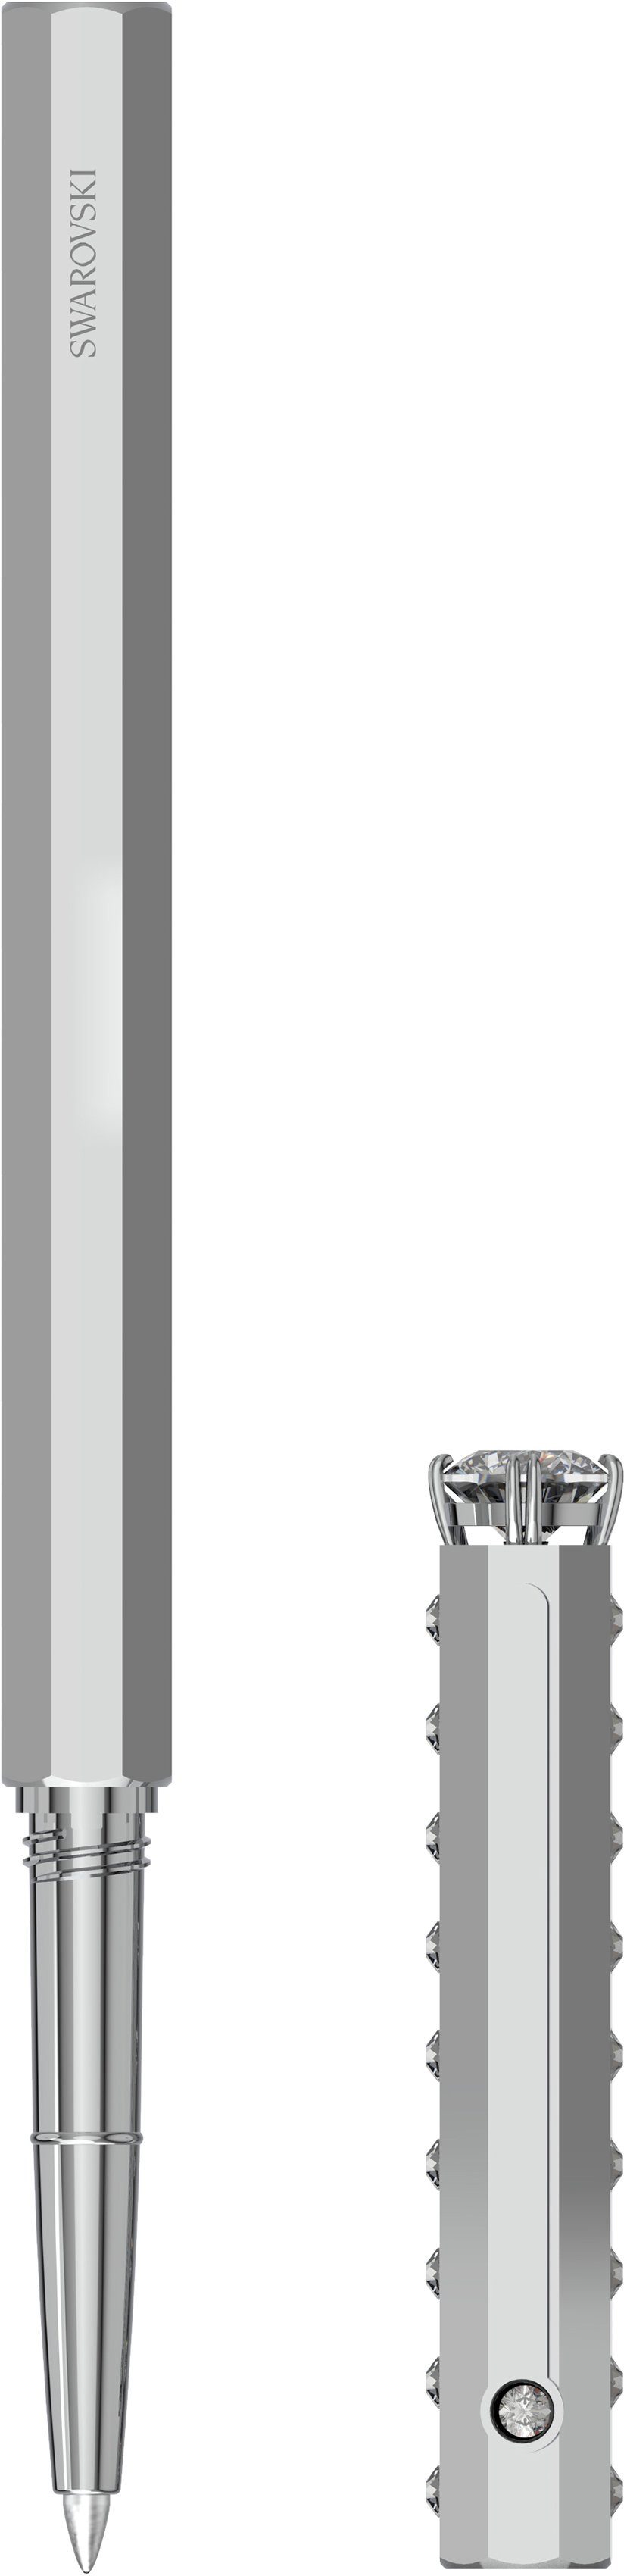 5634417, 5631209, Swarovski® Swarovski metallfarben-kristallweiß Kugelschreiber 5627168, Kristallen mit Klassisch, 5631210,